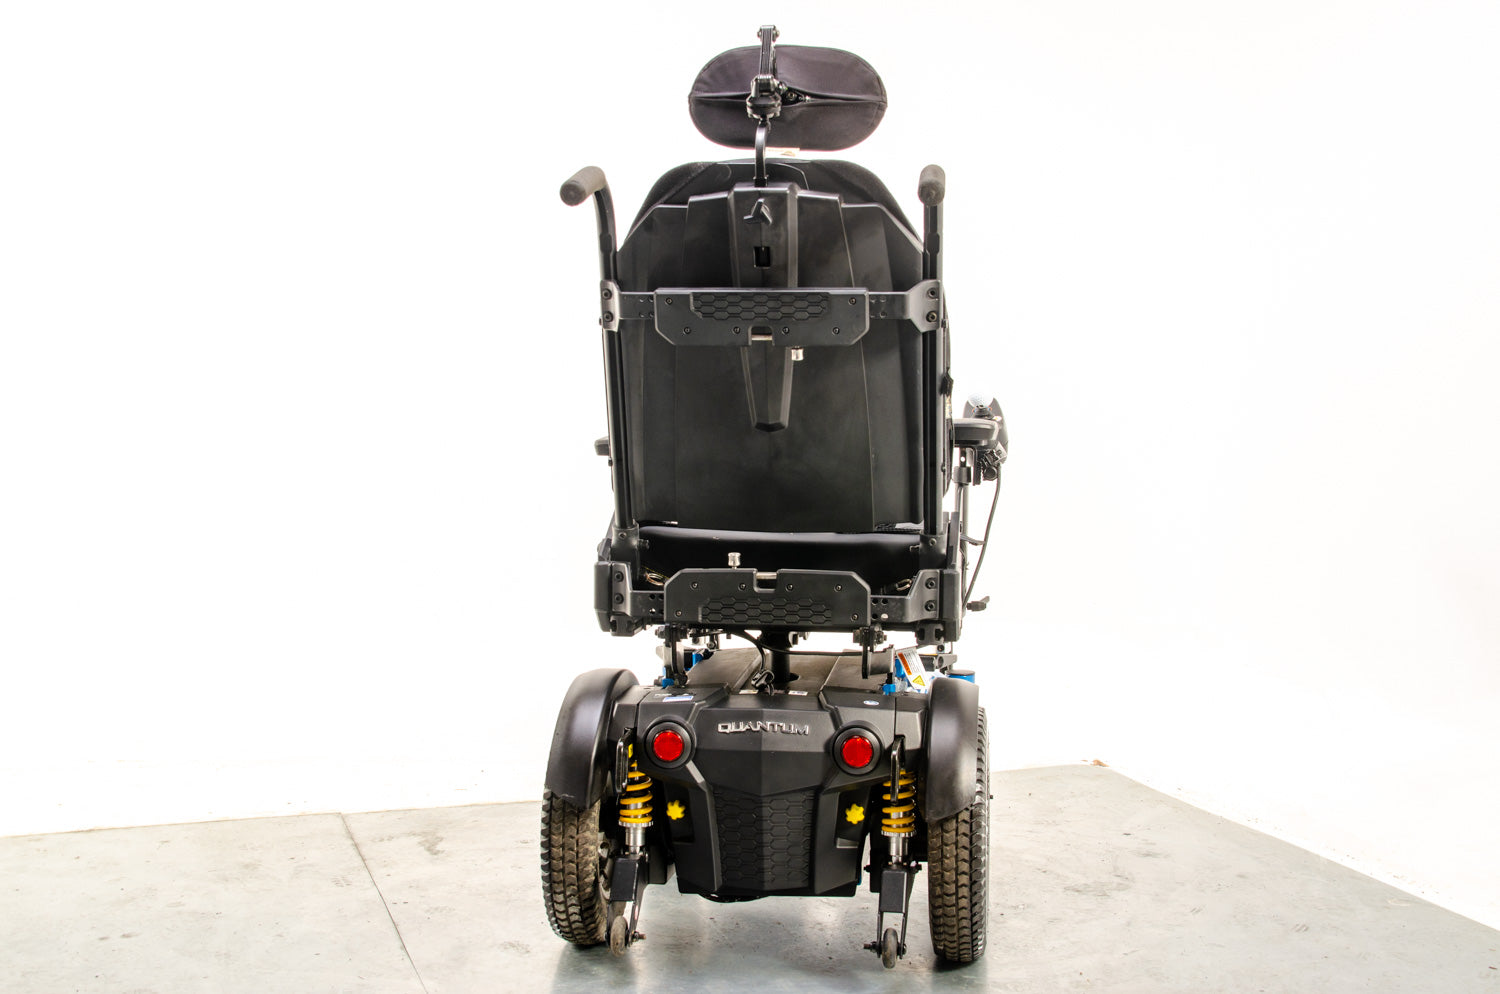 Pride Quantum Aspen Compact Powerchair Electric Wheelchair rear-wheel drive